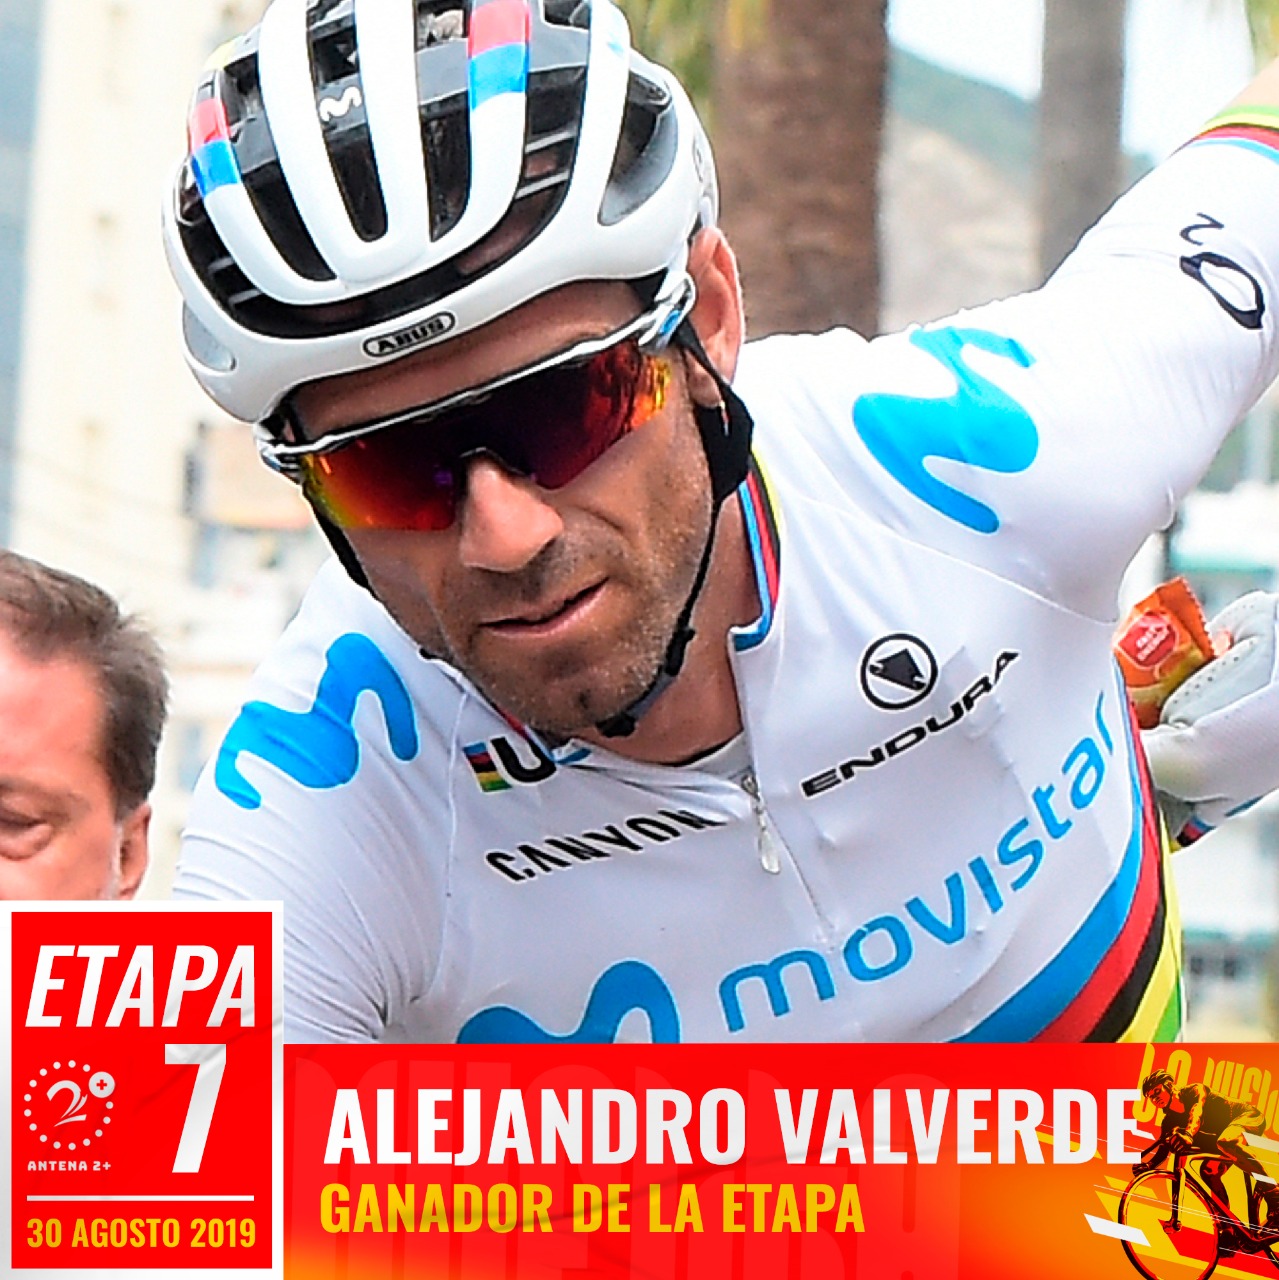 Alejandro Valverde ganó la séptima etapa de la Vuelta a España